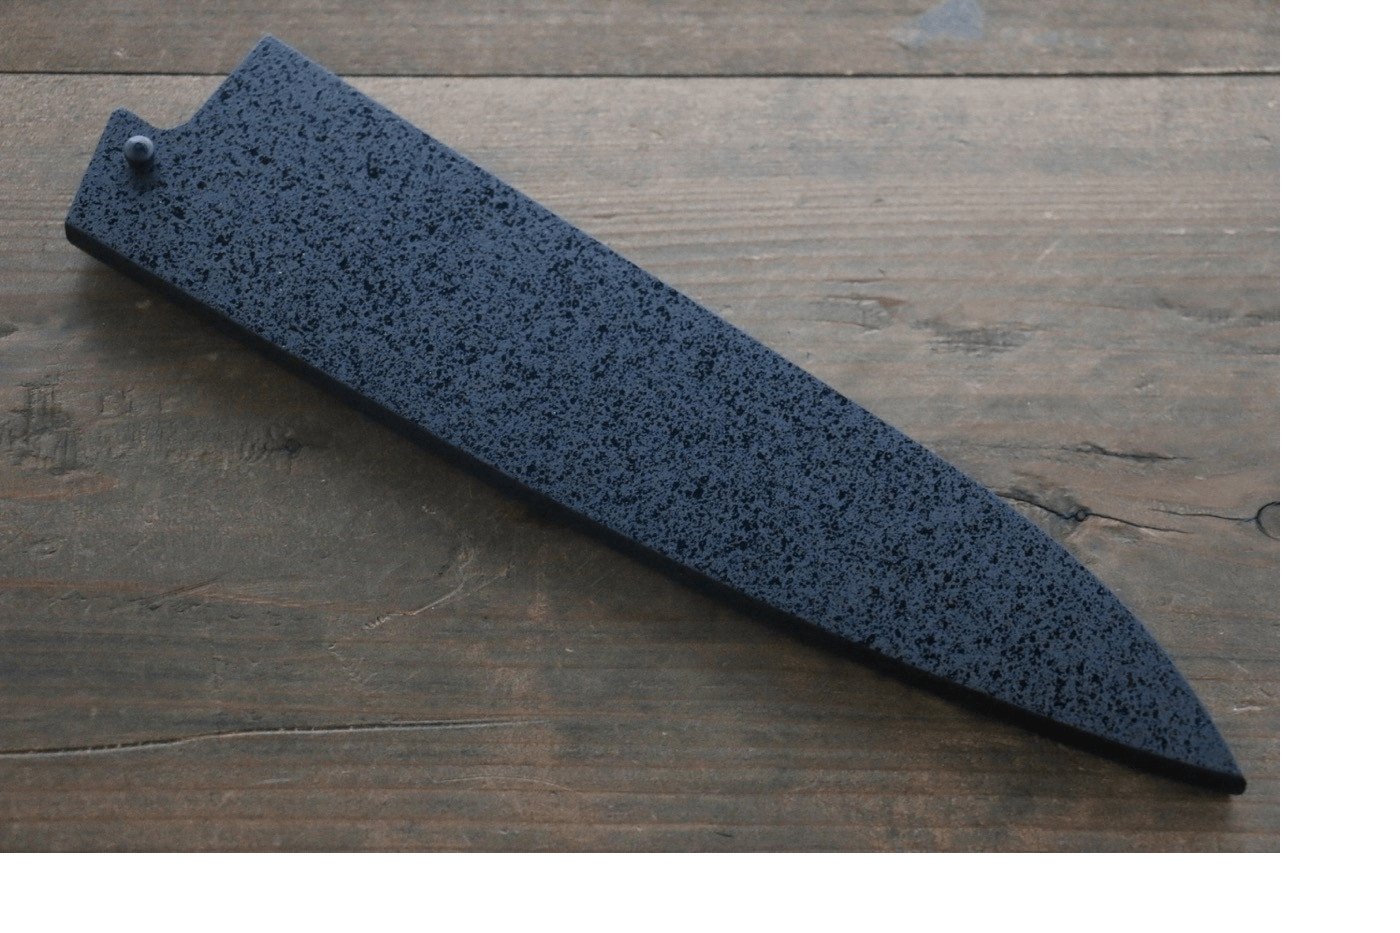 Bao dao bảo vệ lưỡi dao 210mm Gyuto gỗ mộc Lan chốt chặn tiện lợi bằng nhựa tổng hợp - DAO NHẬT CAO CẤP CHÍNH HÃNG ANNIVERSARY WORLD